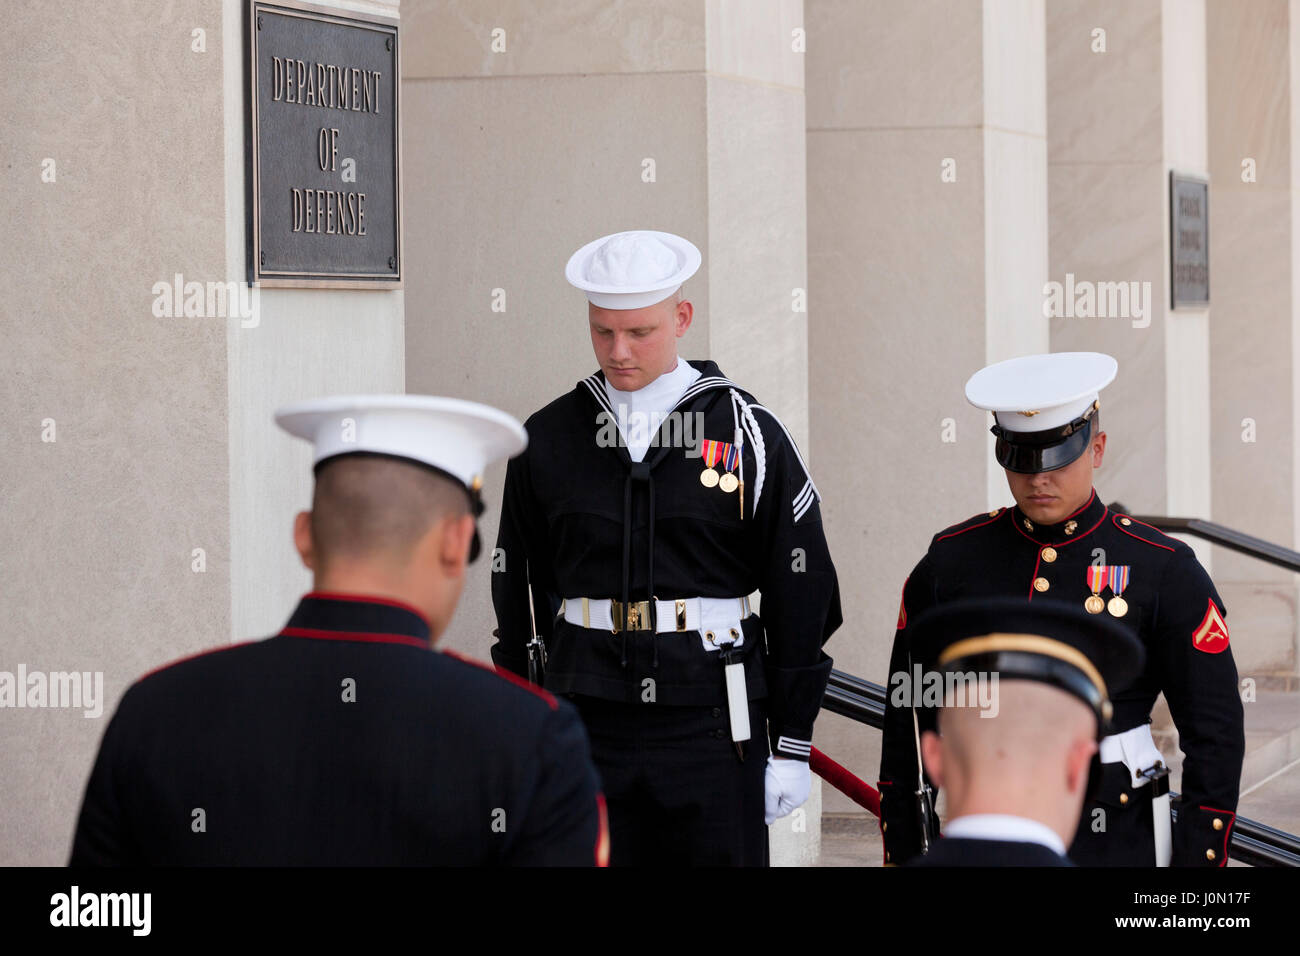 Cordón de Honor miembros del servicio común en la entrada del río del Pentágono durante el dignatario extranjero visita - Washington, DC, EE.UU. Foto de stock